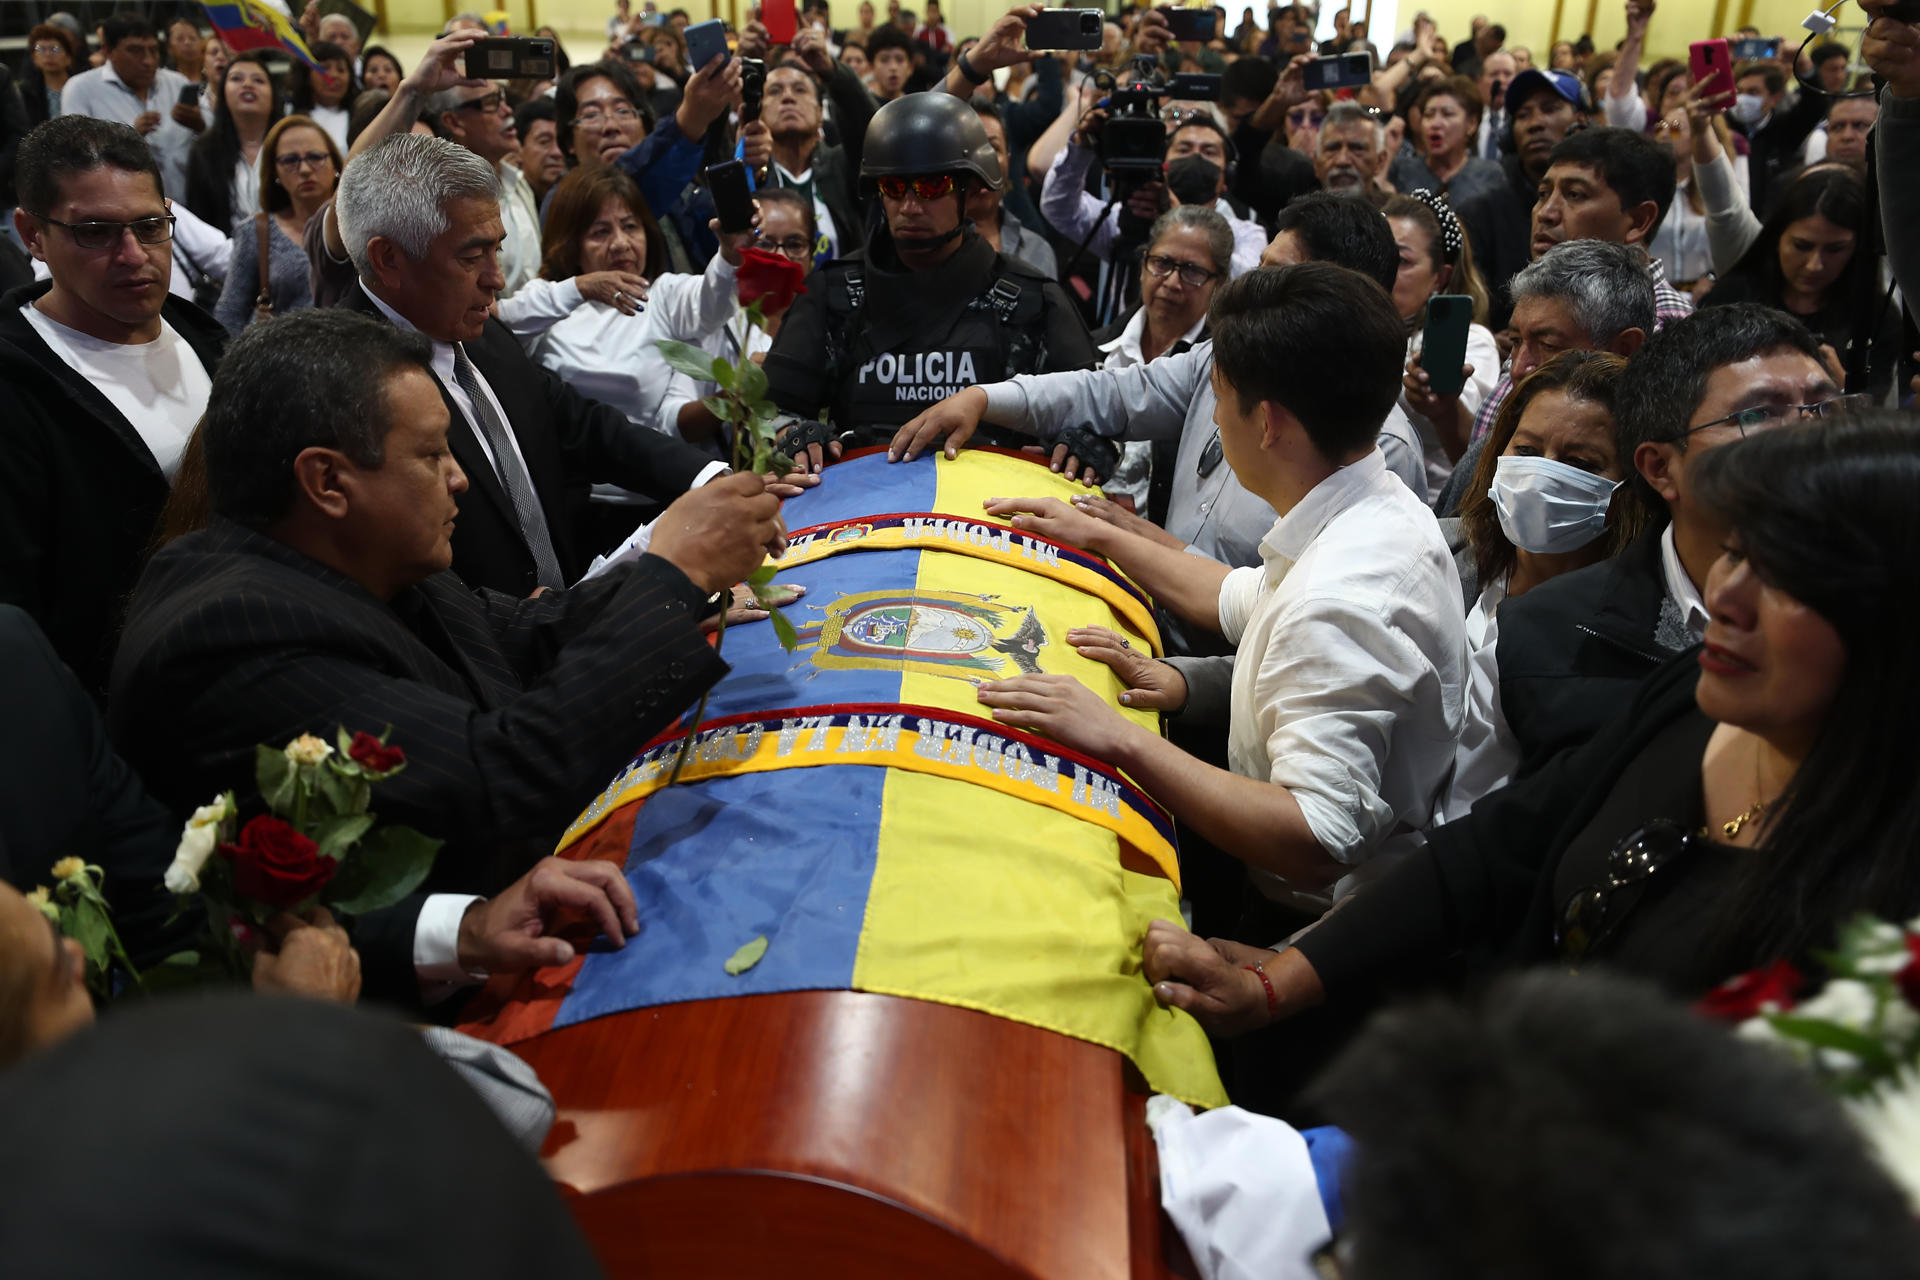 El candidato ecuatoriano Villavicencio tendrá un velatorio público antes de ser enterrado